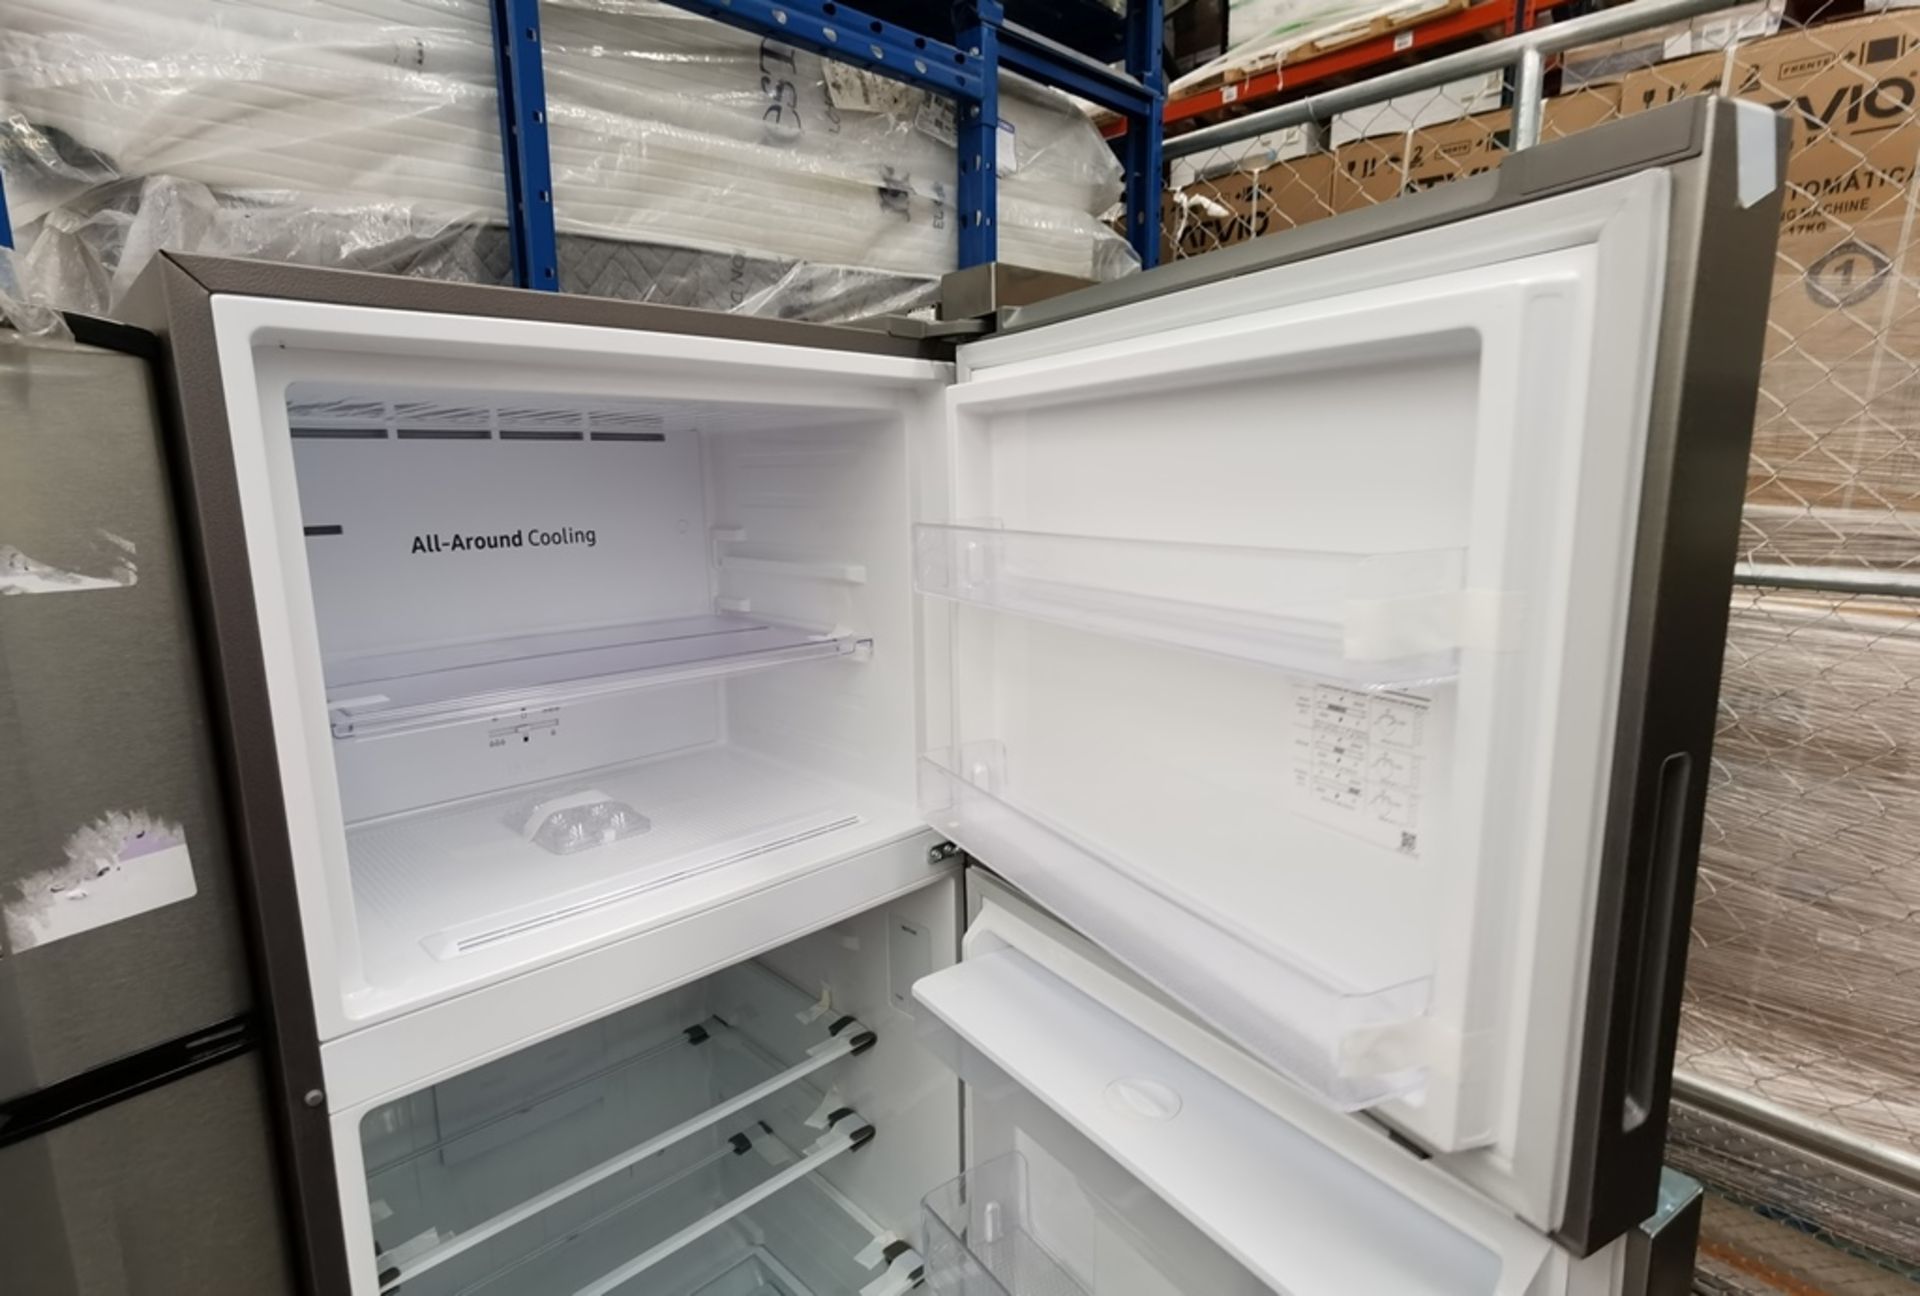 Lote De 2 Refrigeradores Contiene: 1 Refrigerador Marca Samsung Modelo RT44A6304S9, Serie 0BDF4BAR9 - Image 7 of 16